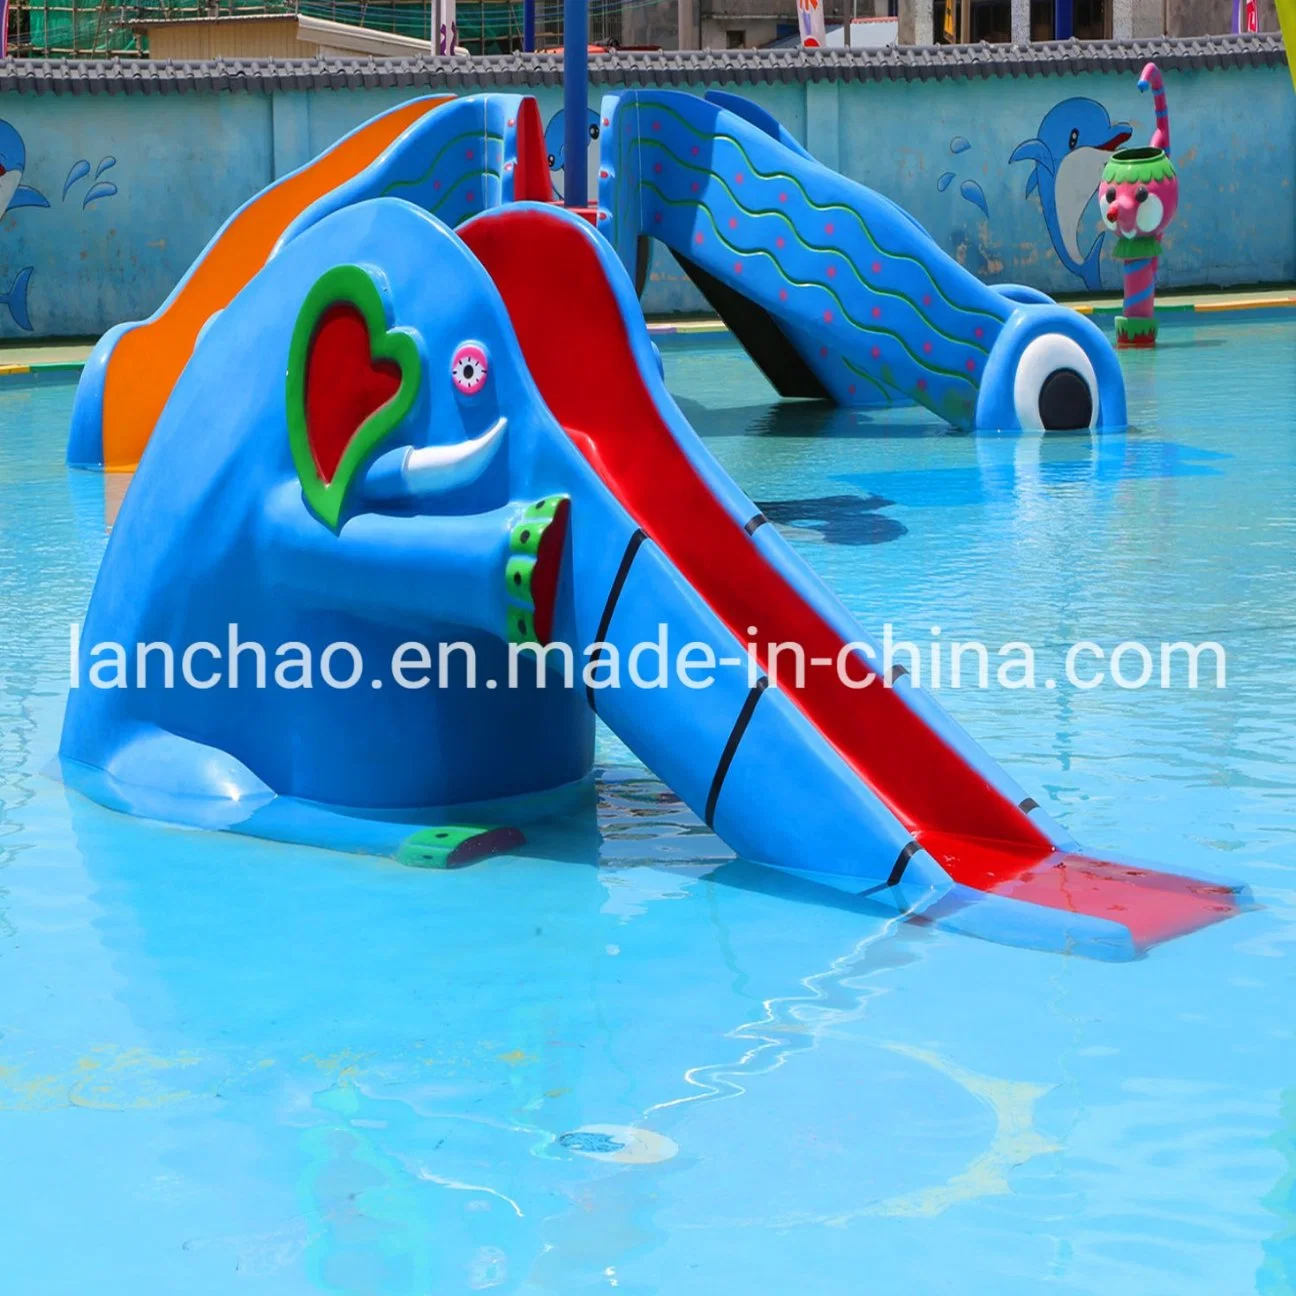 Aqua Park piscina tobogán de agua para niños Parque infantil de diversiones